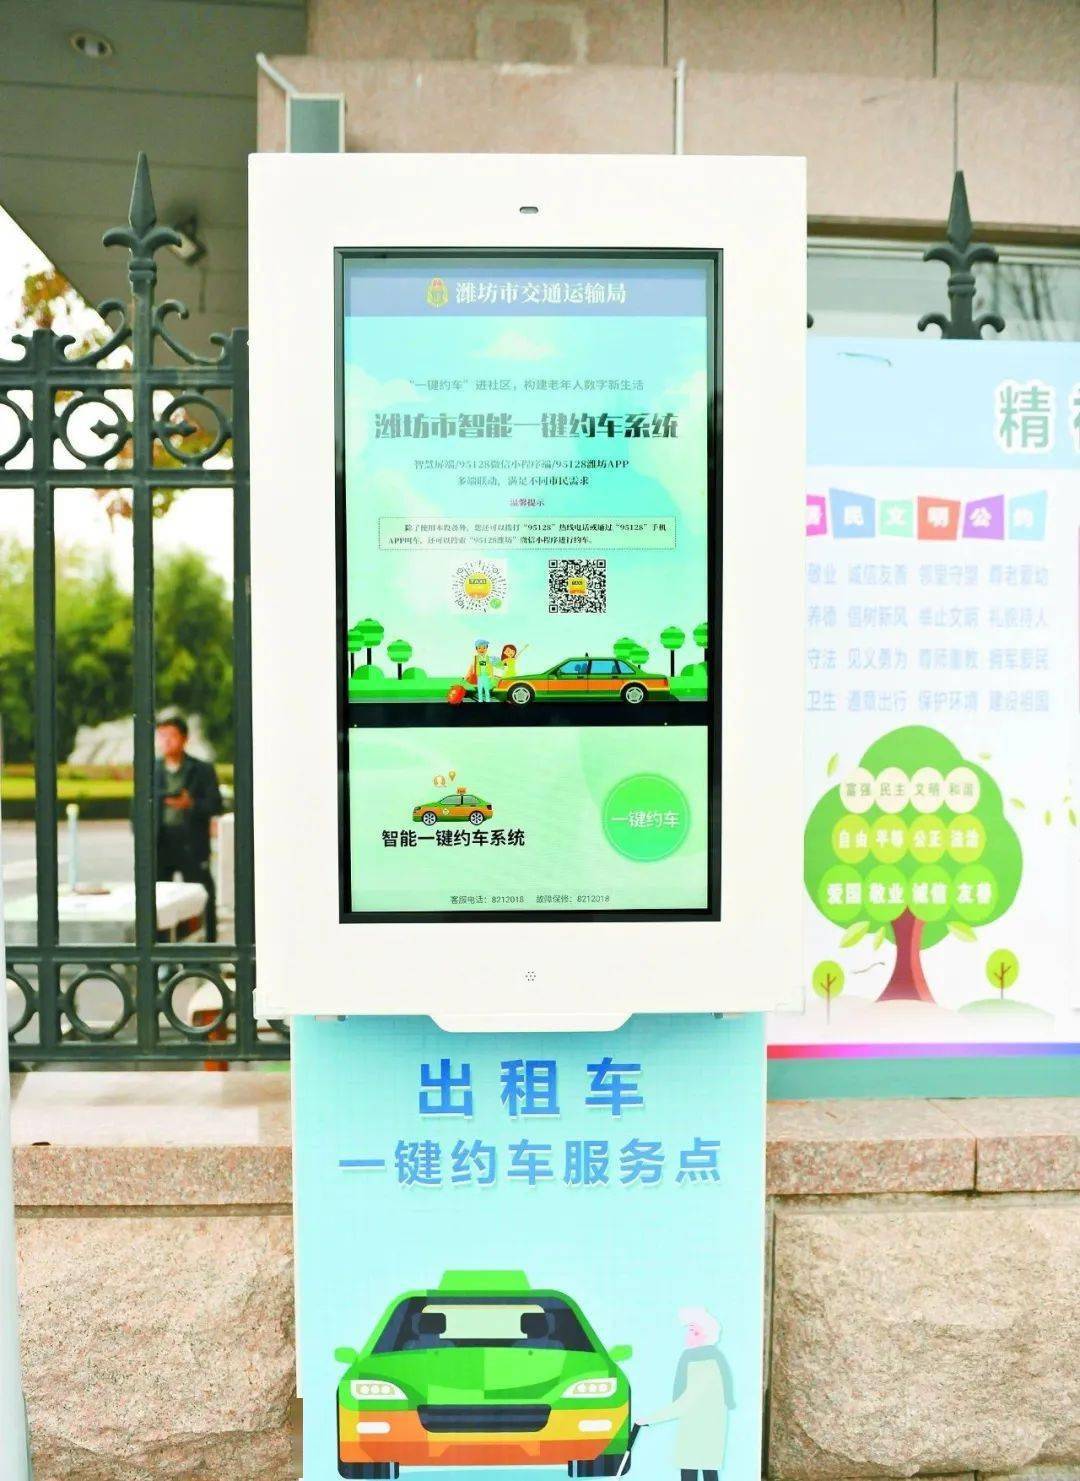 华为手机摁键设置在哪
:潍坊｜开发“一键约车”设备 助力银发群体跨越数字鸿沟